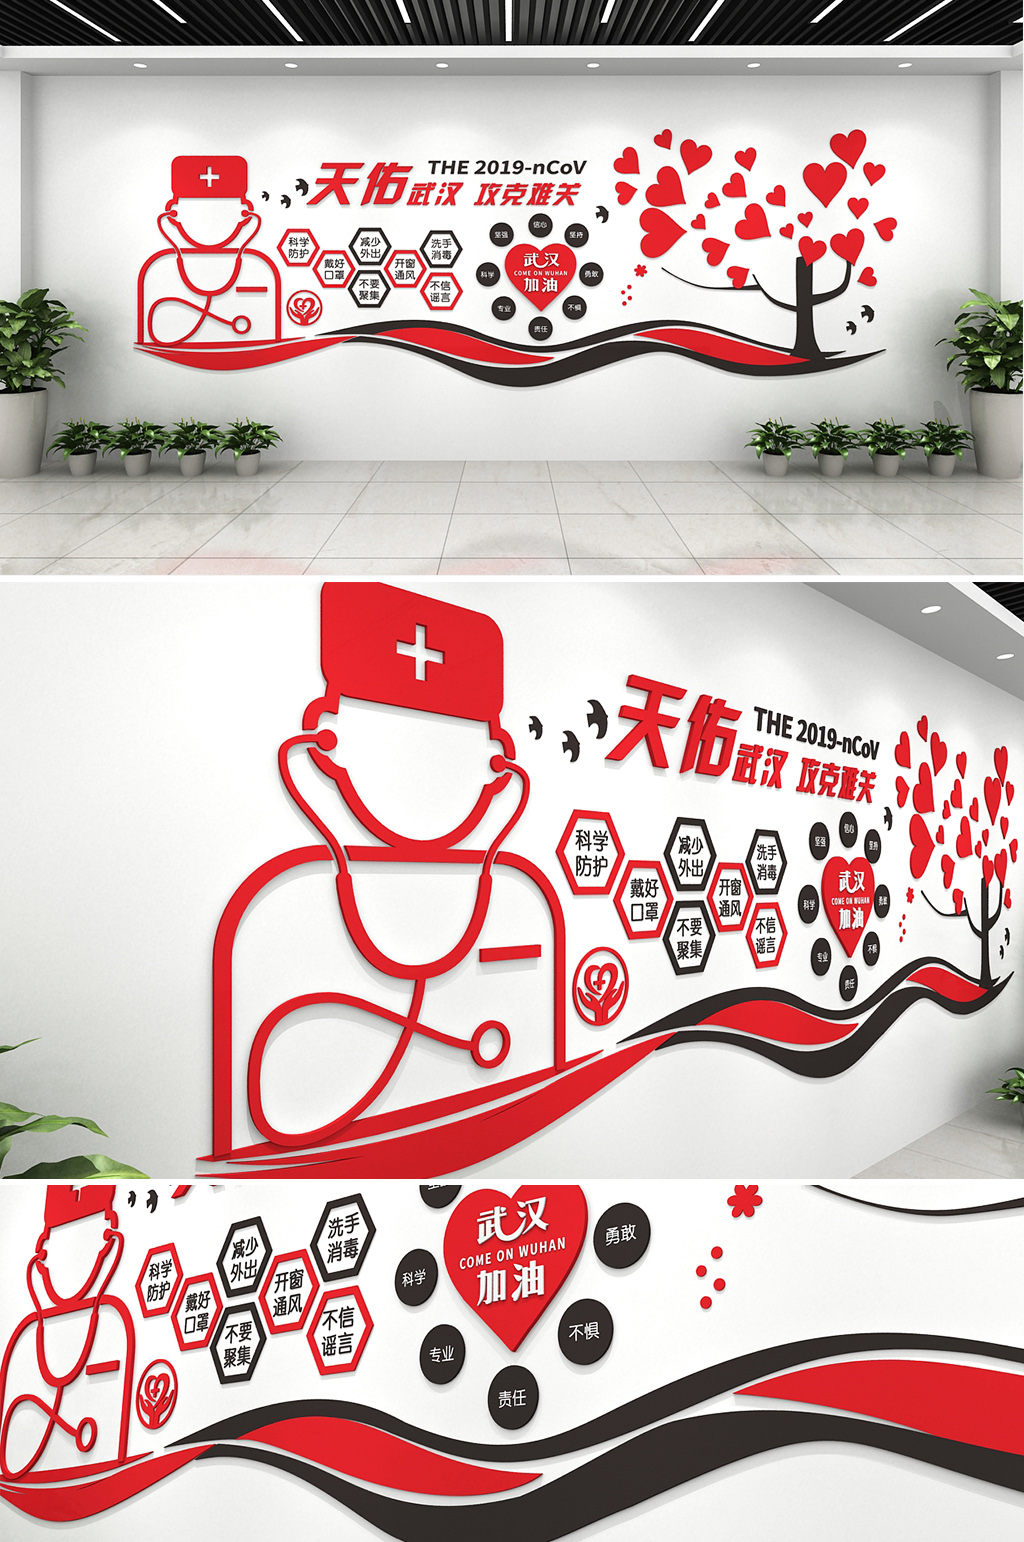 中国医疗保障背景墙图片